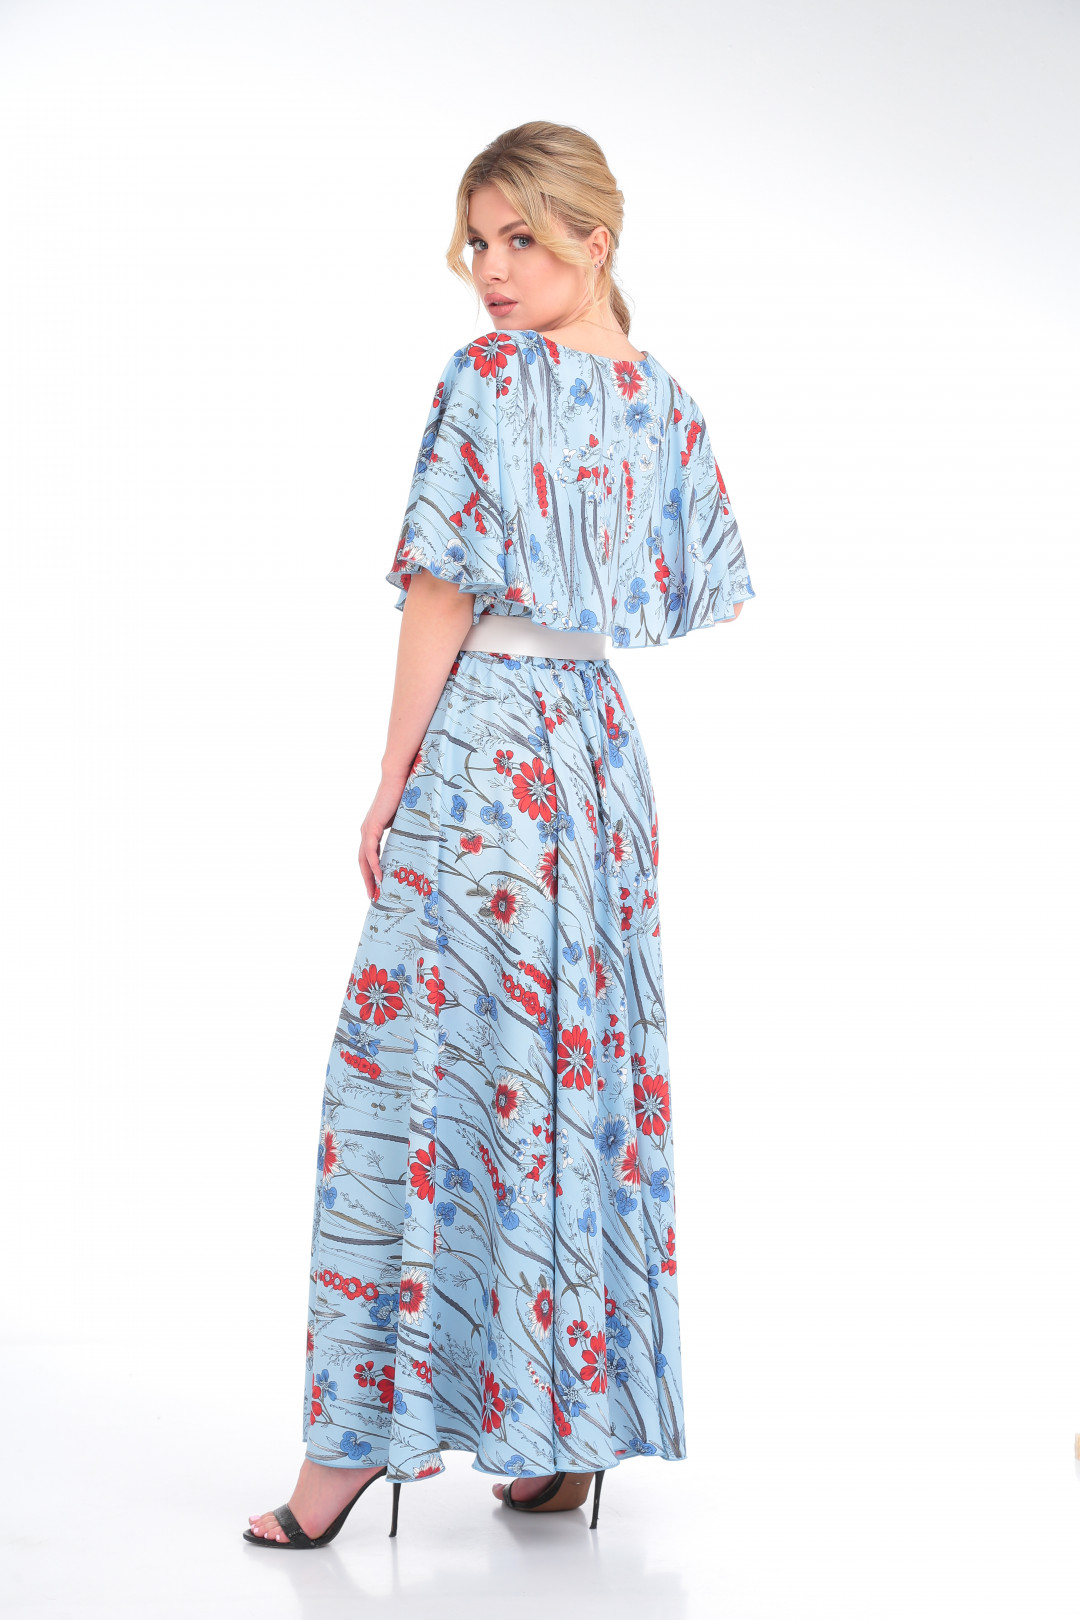 Платье Anastasia 892 голубой с молочным поясом